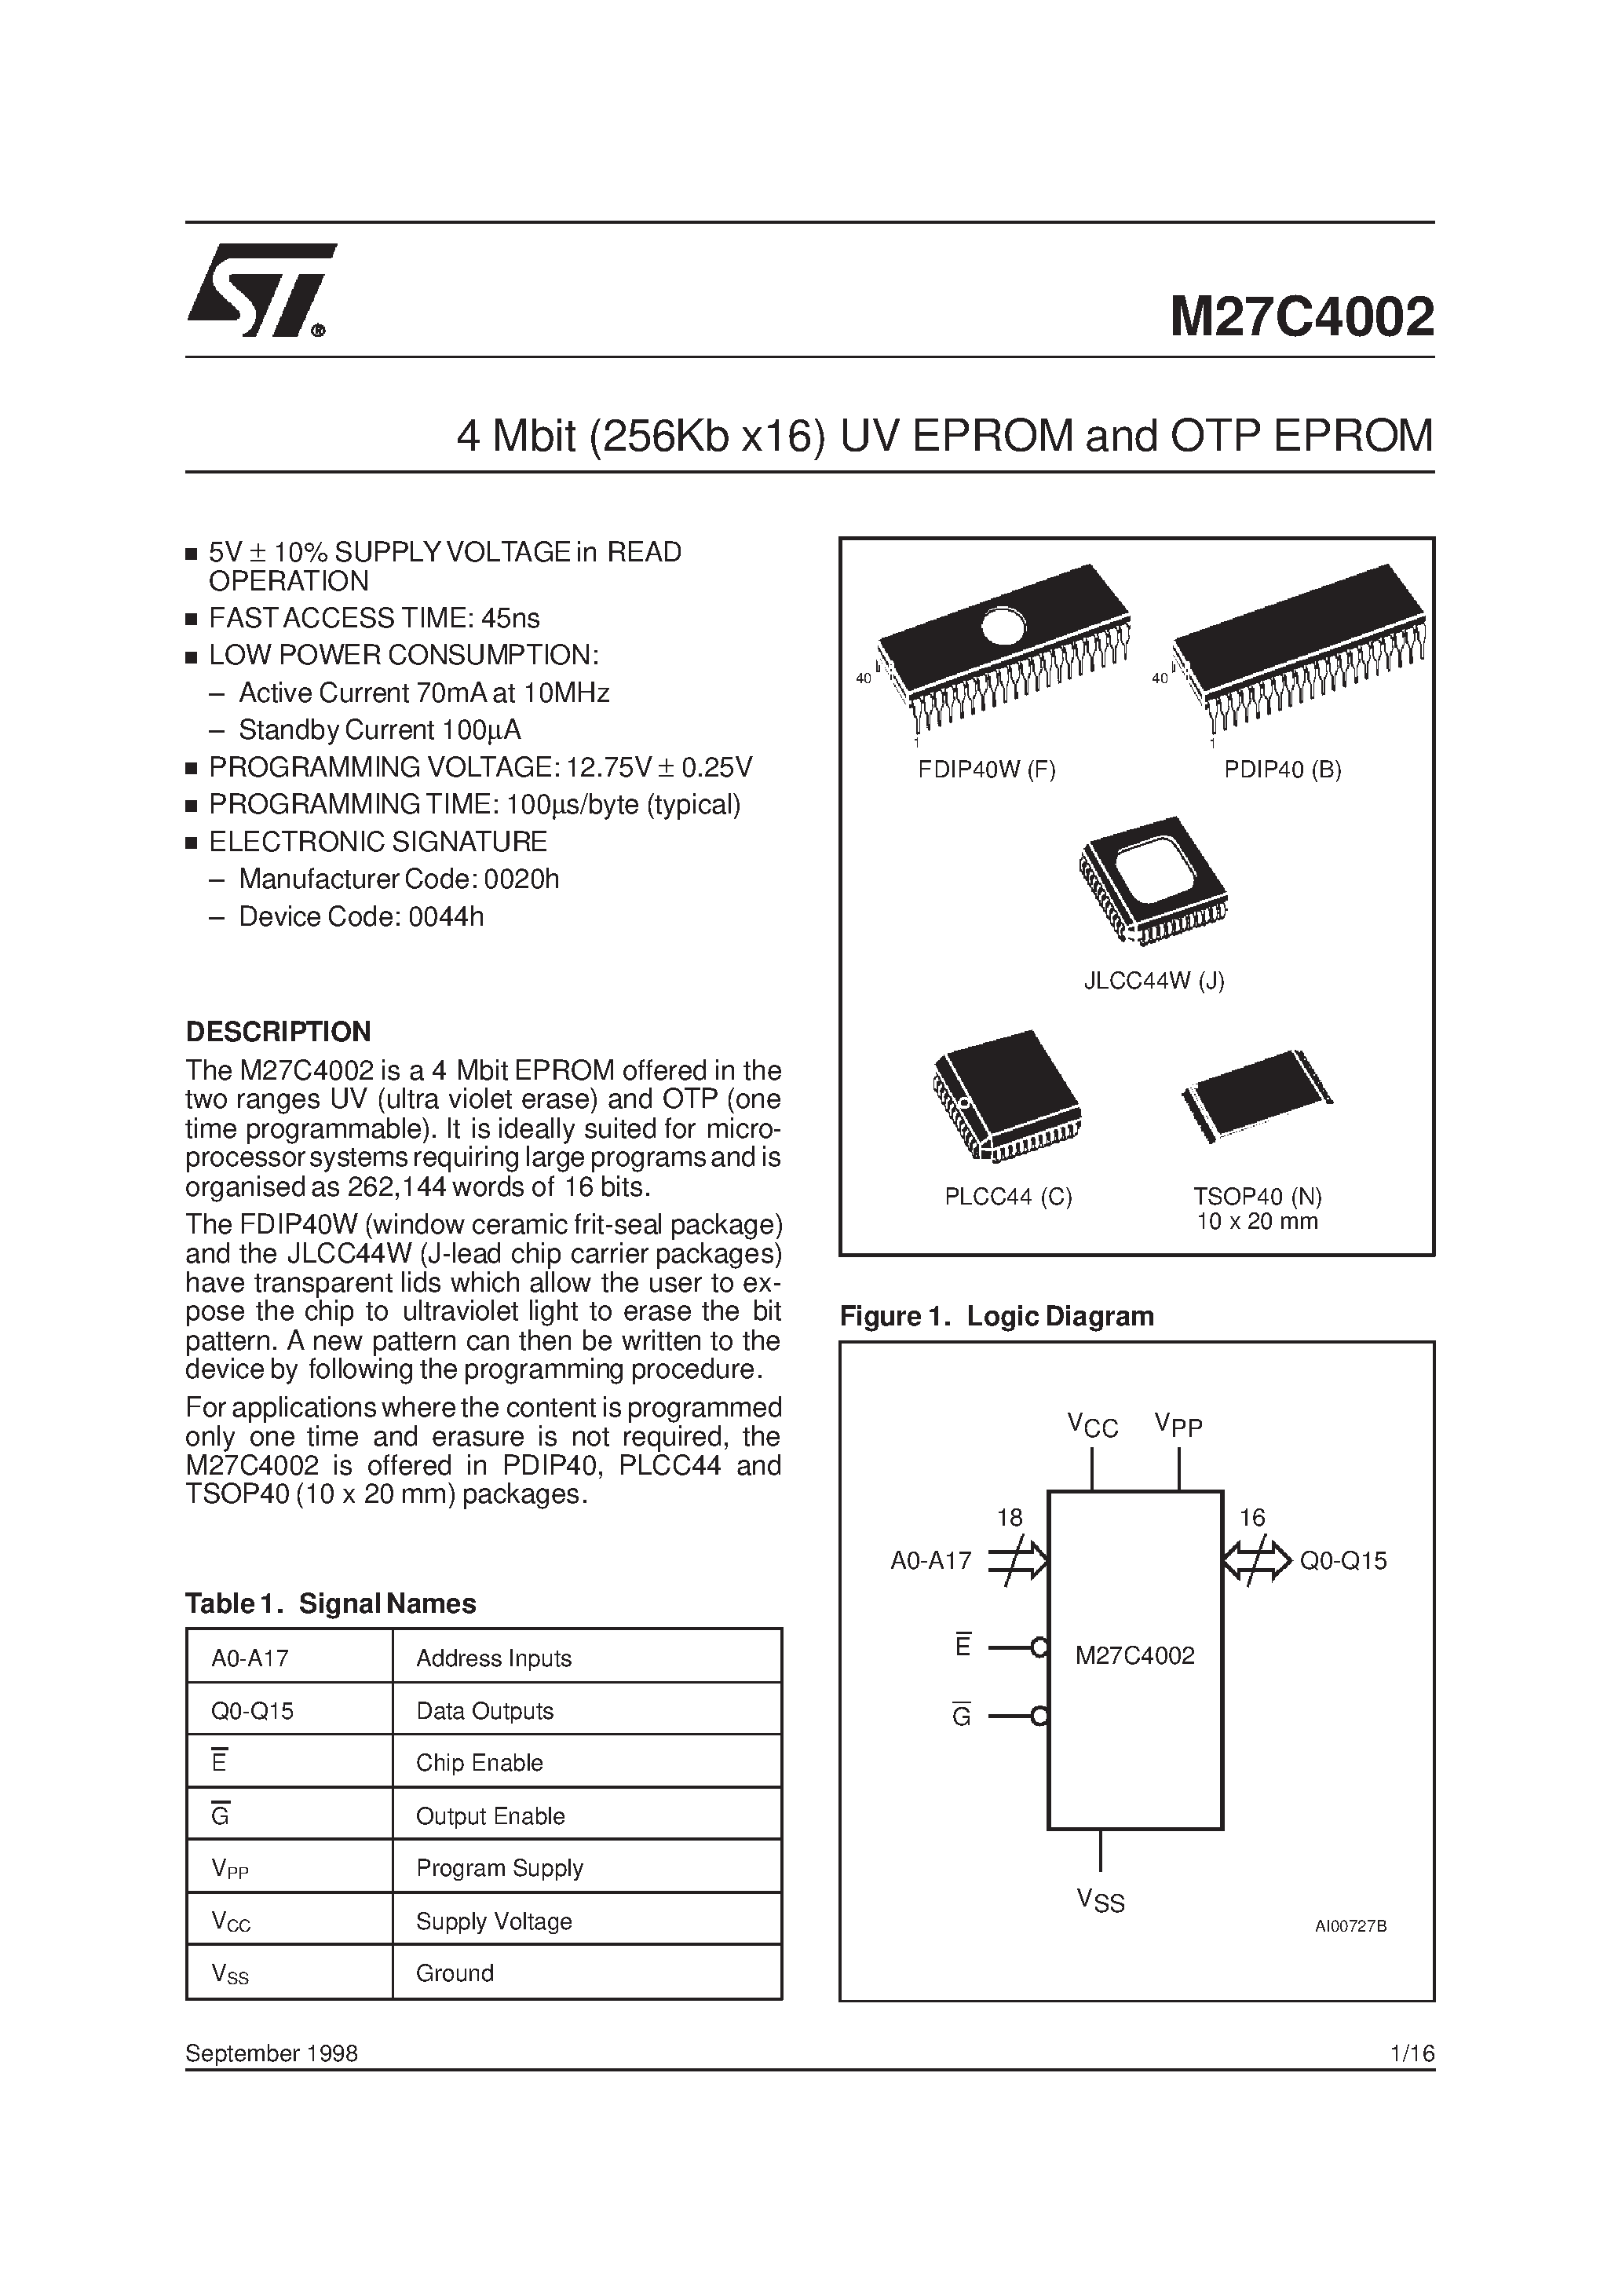 Datasheet M27C4002-10F1X - 4 Mbit 256Kb x16 UV EPROM and OTP EPROM page 1